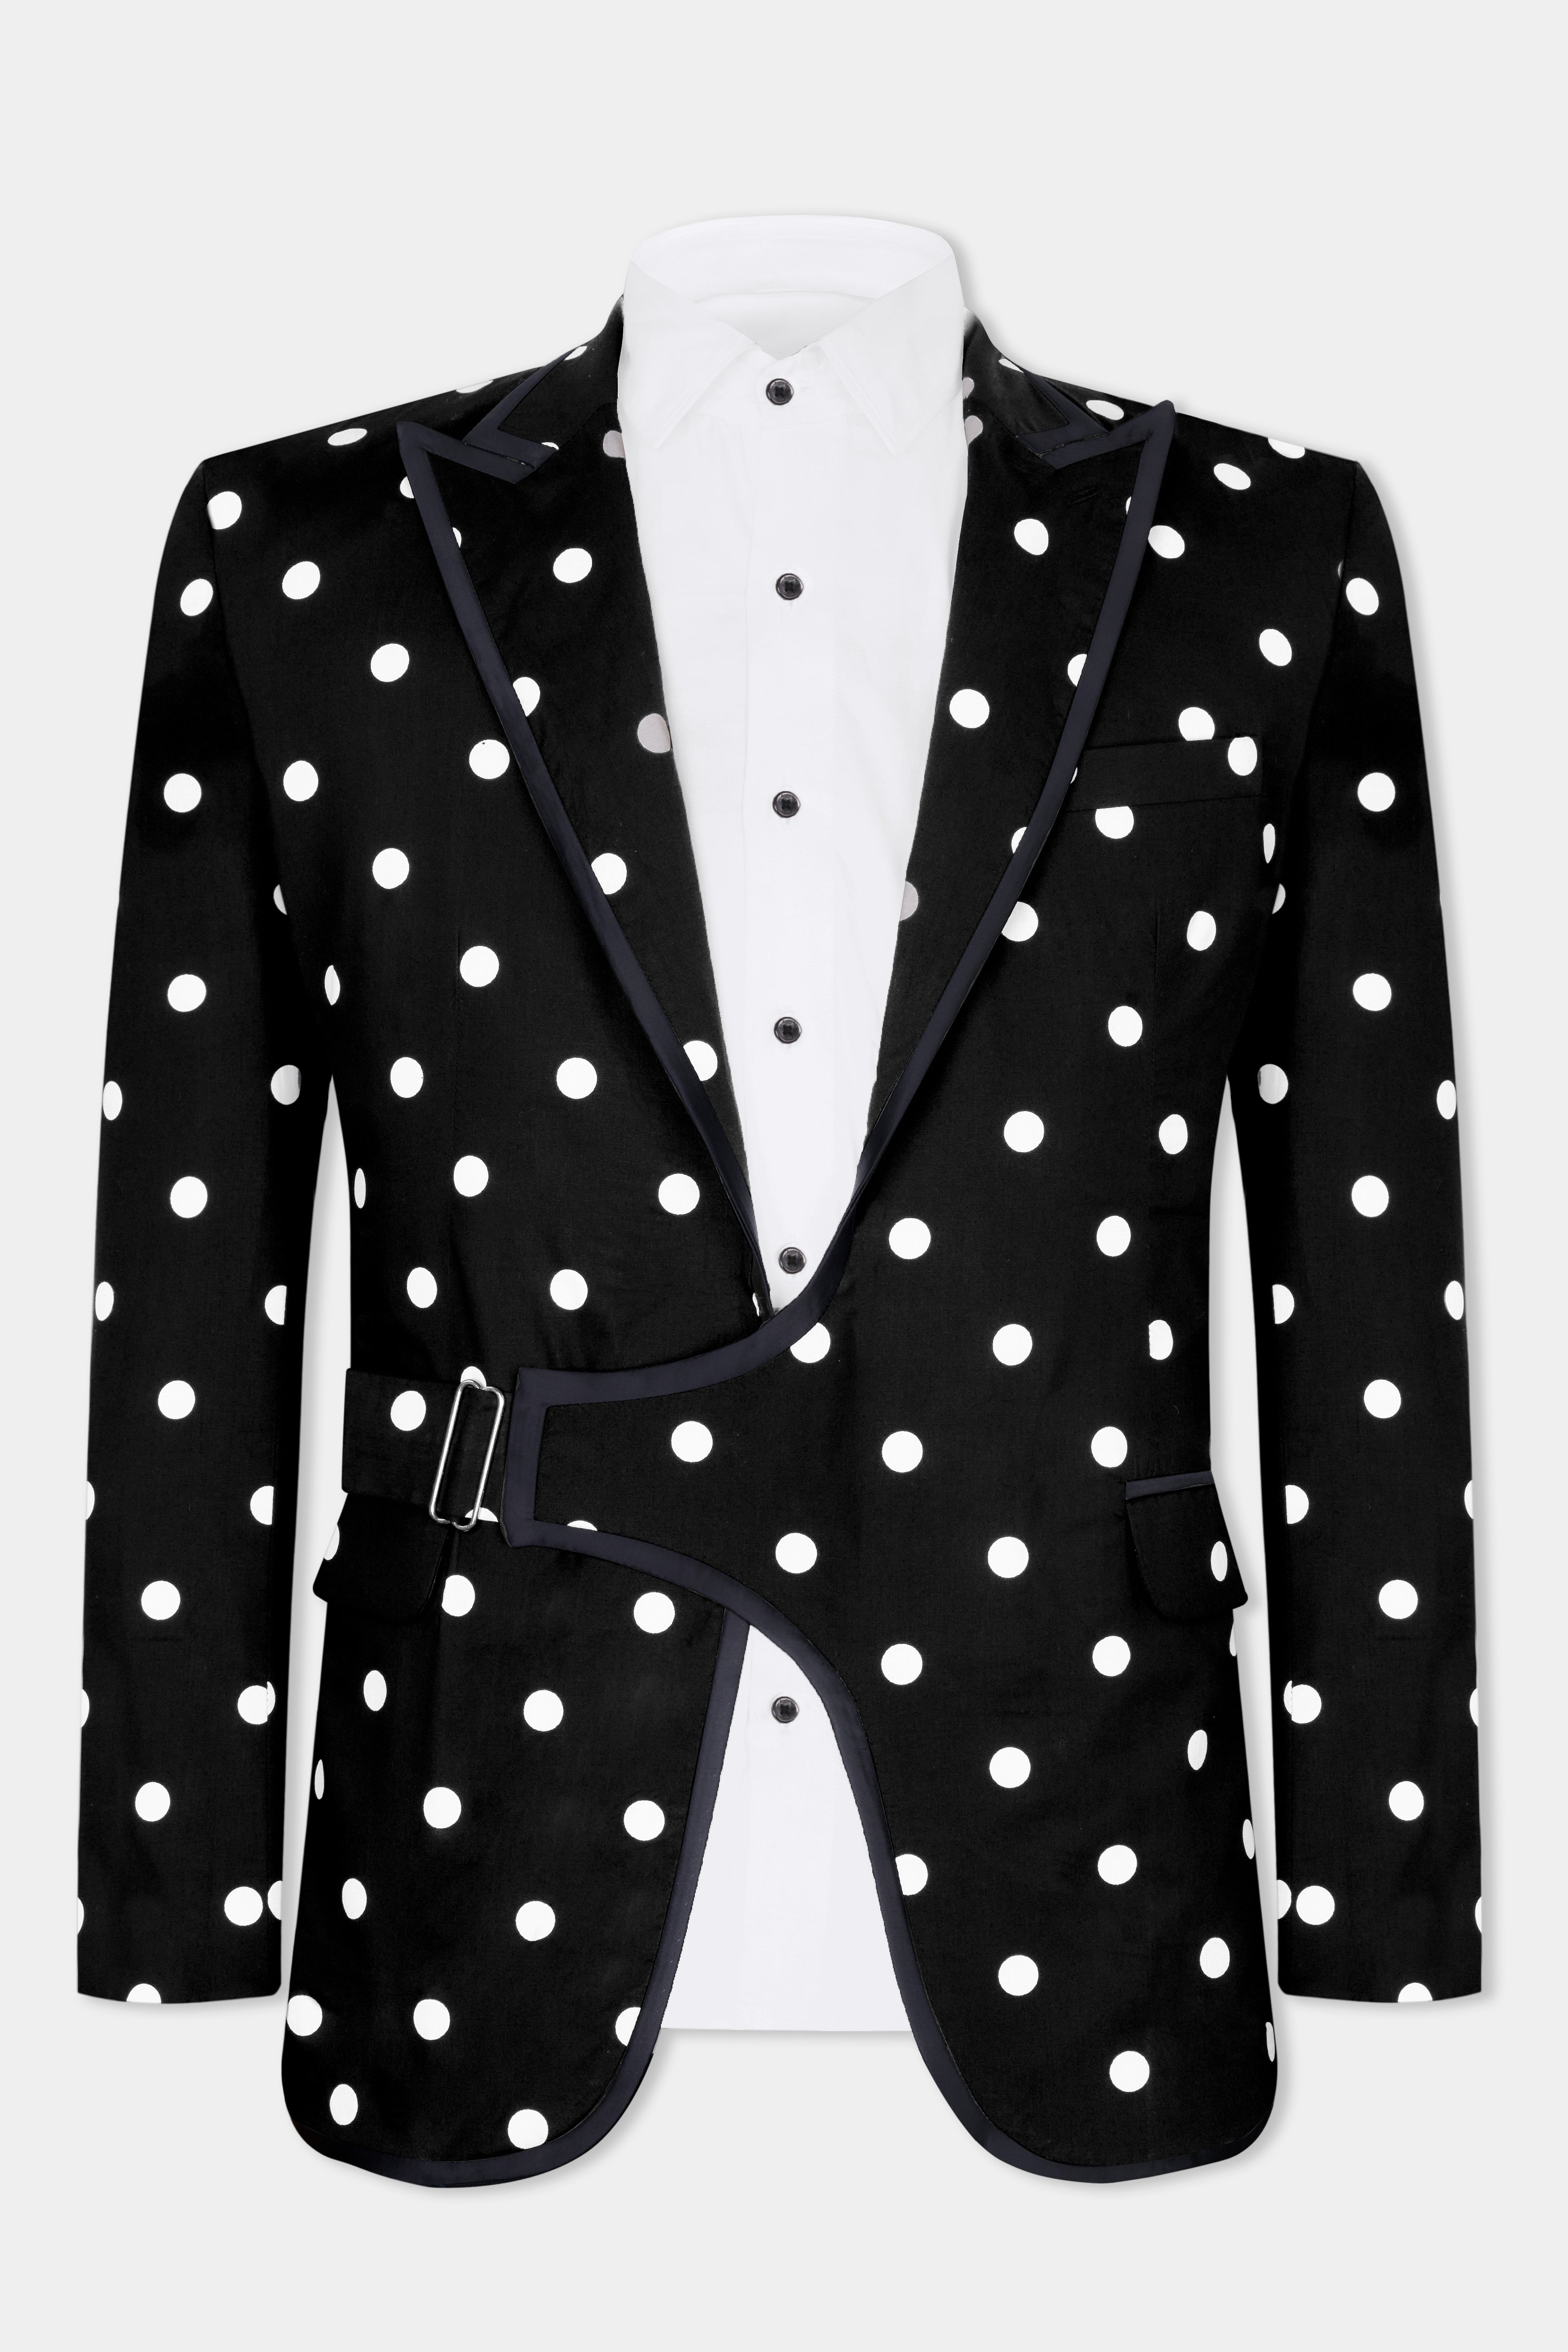 Jade Black with White Polka Dotted Premium Cotton Designer Blazer